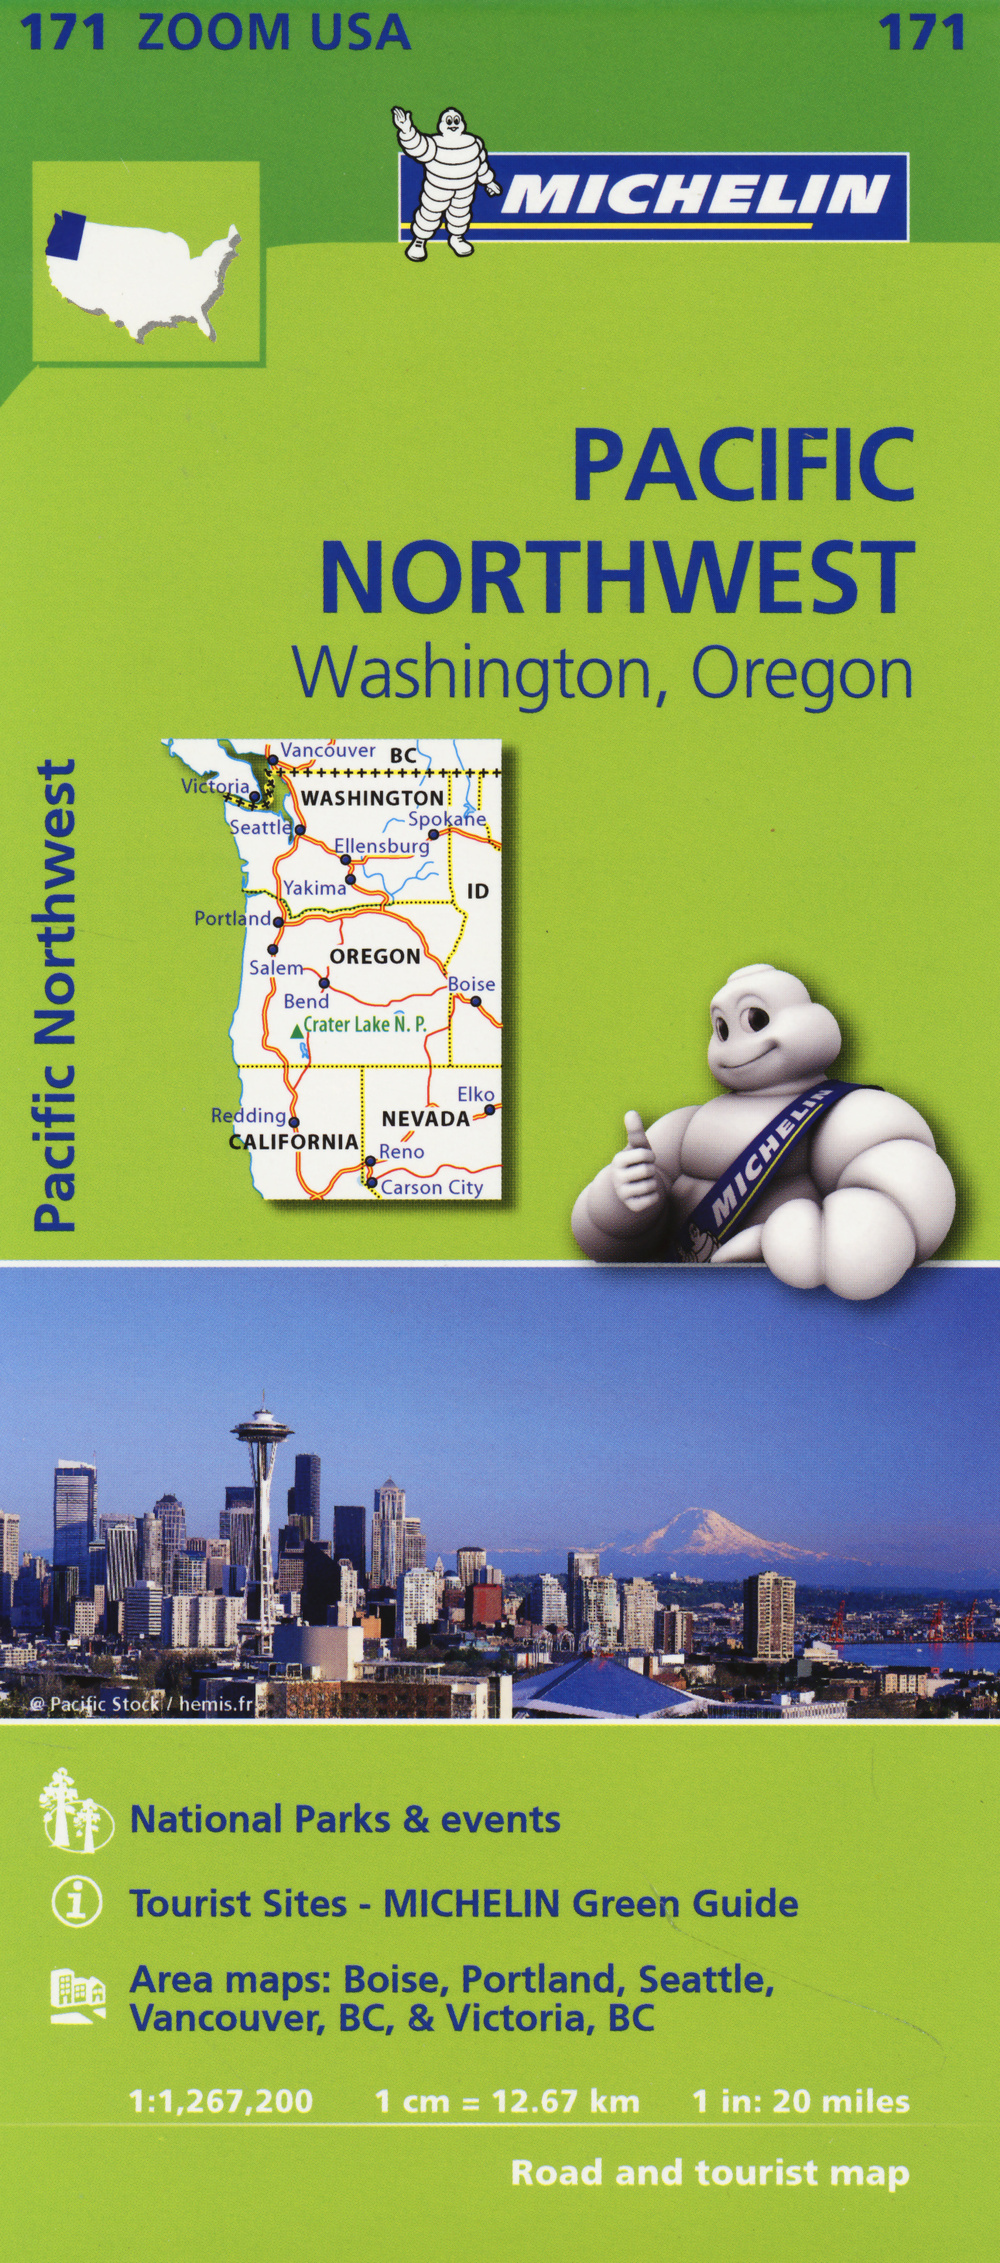 Pacific Northwest. Washington, Oregon 1:1.267.200